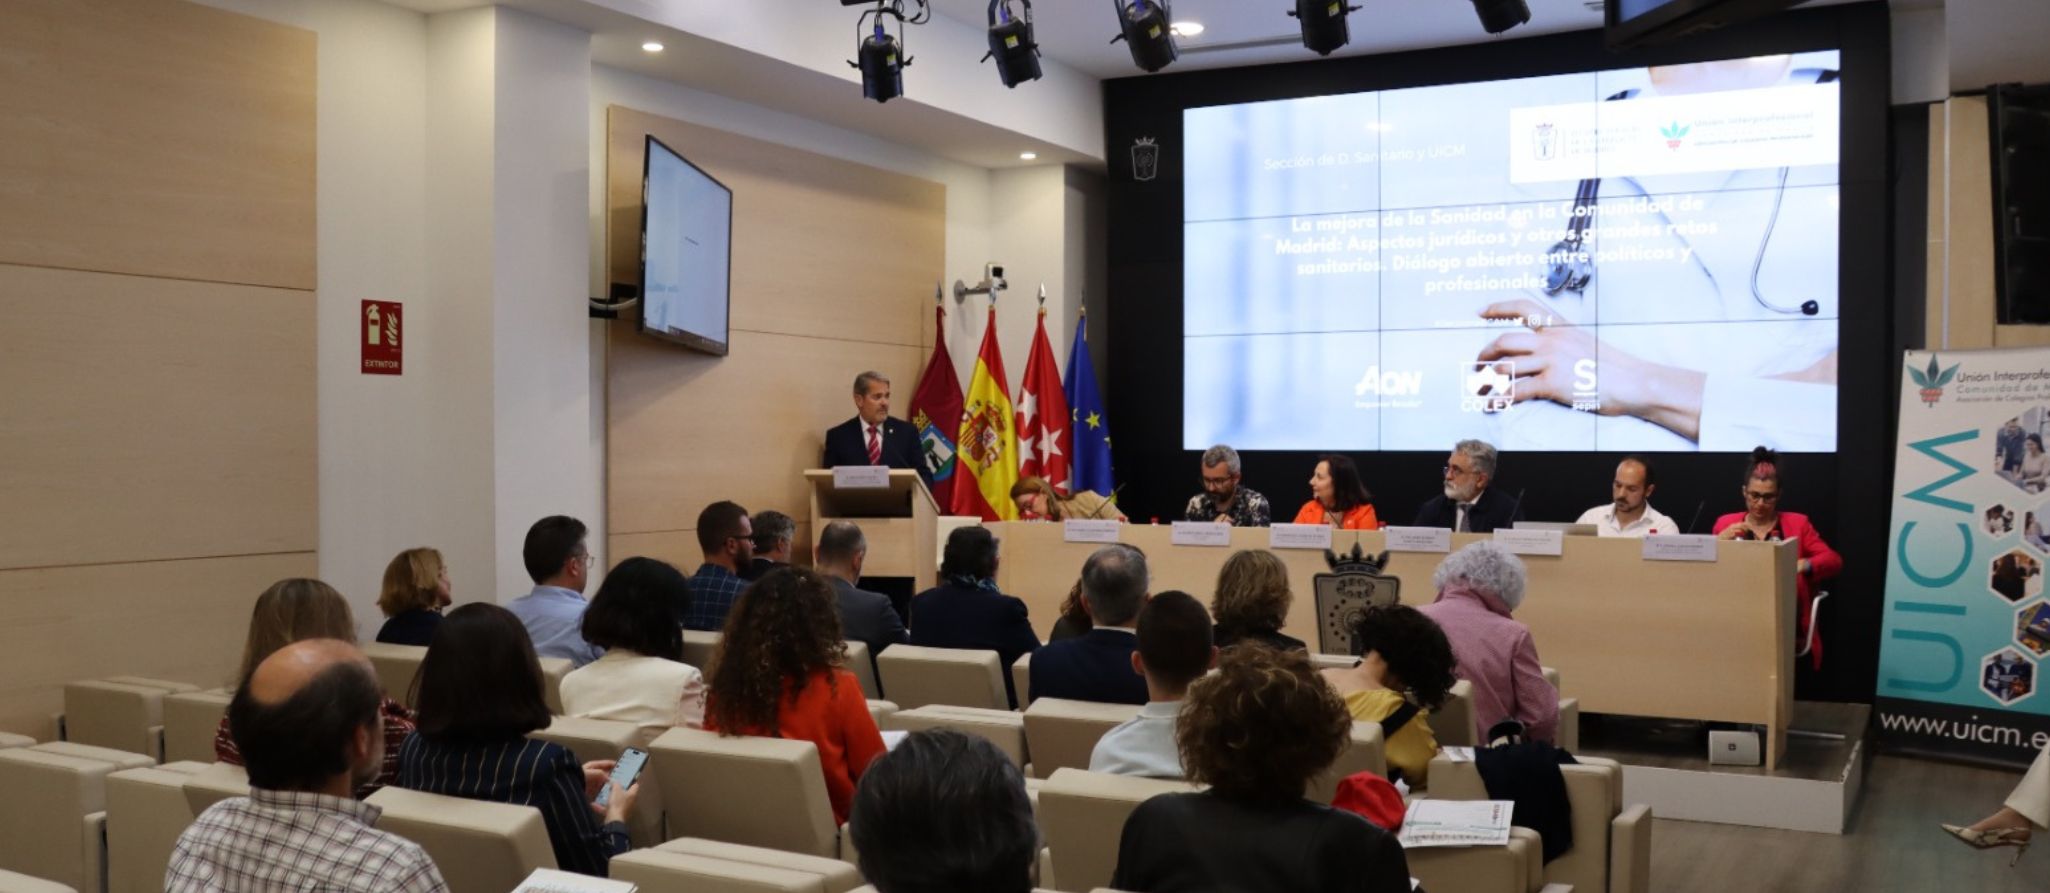 El ICAM acoge una jornada con los principales partidos políticos de la Comunidad de Madrid para presentar sus propuestas para la mejora de la sanidad de Madrid